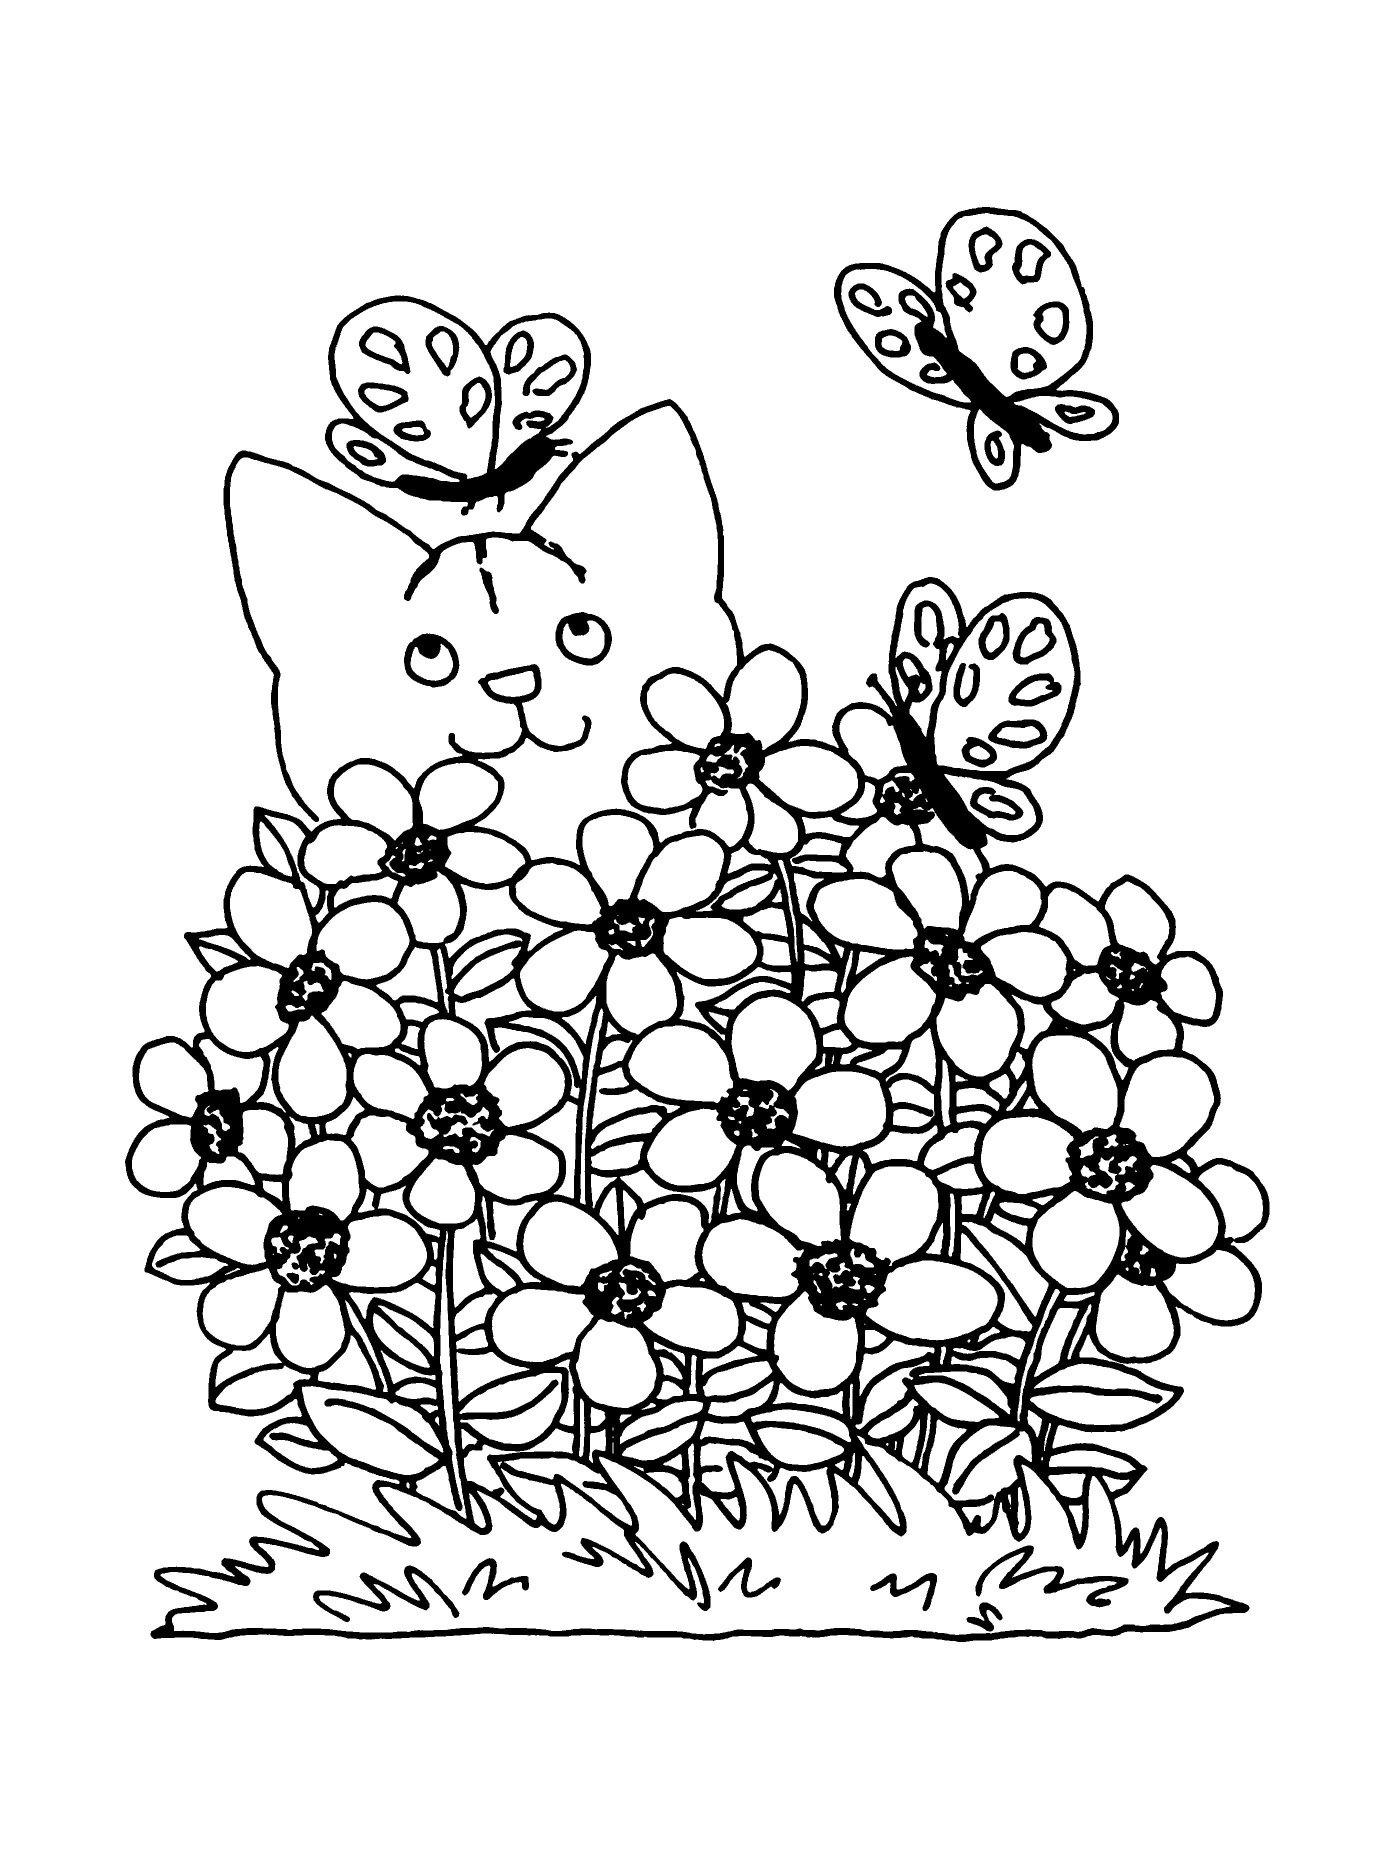  Весенняя кошка, цветочное соучастие 